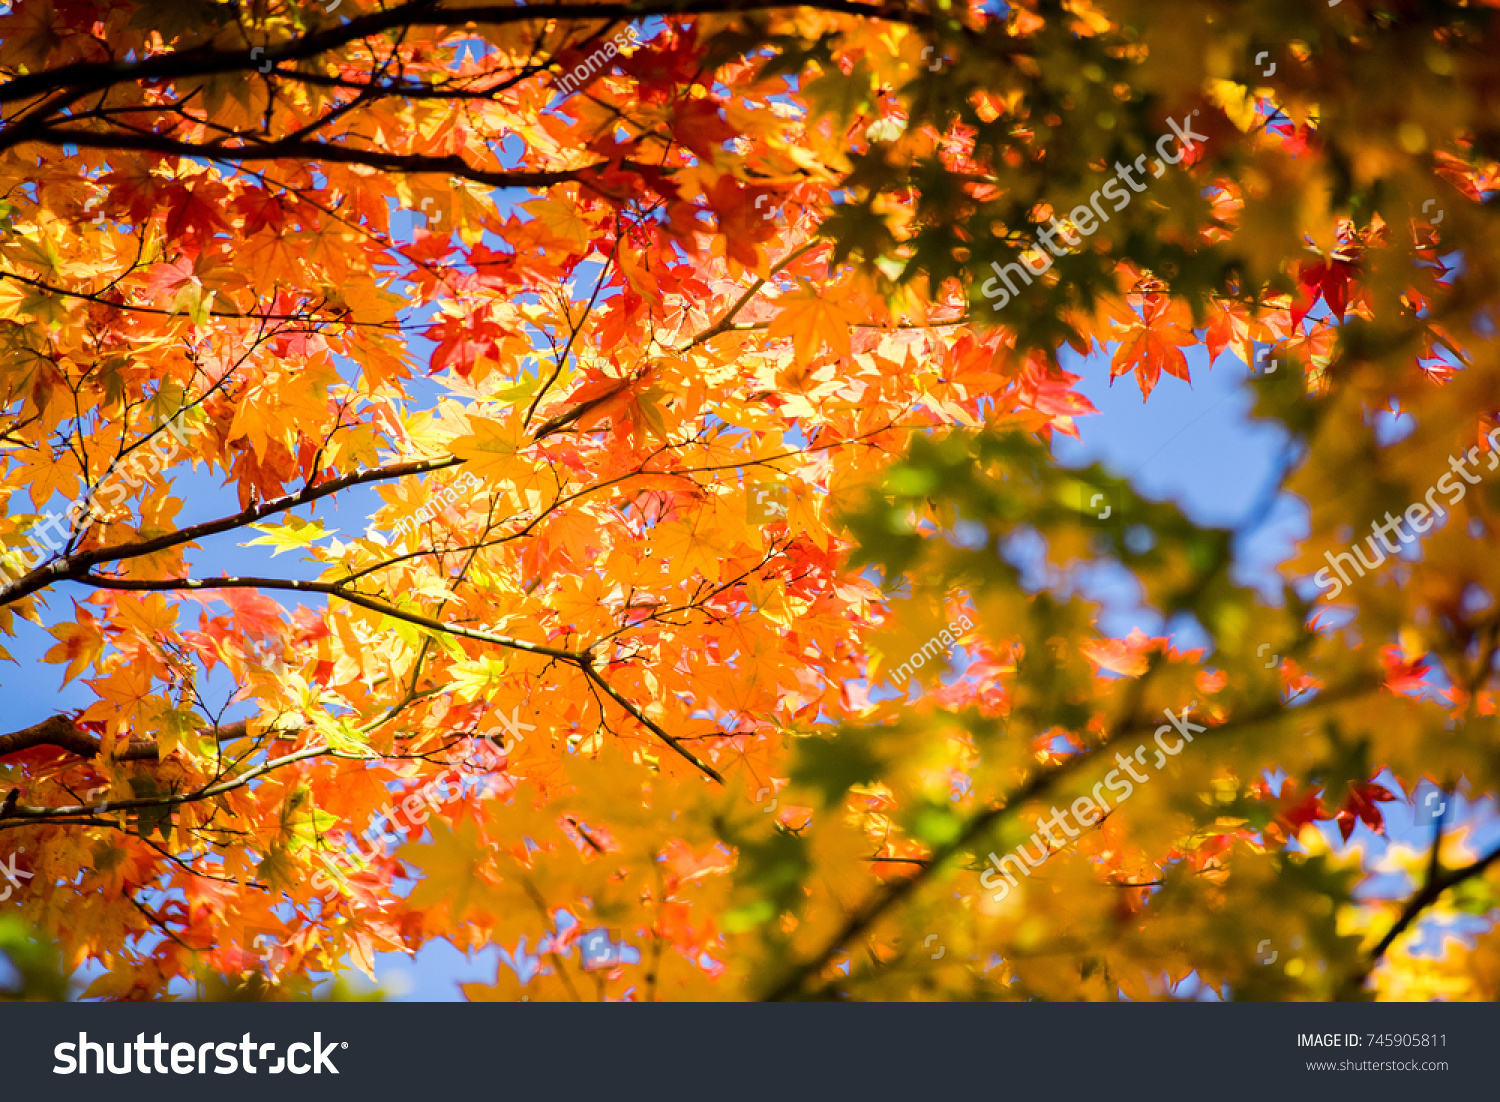 Autumn leaves #745905811